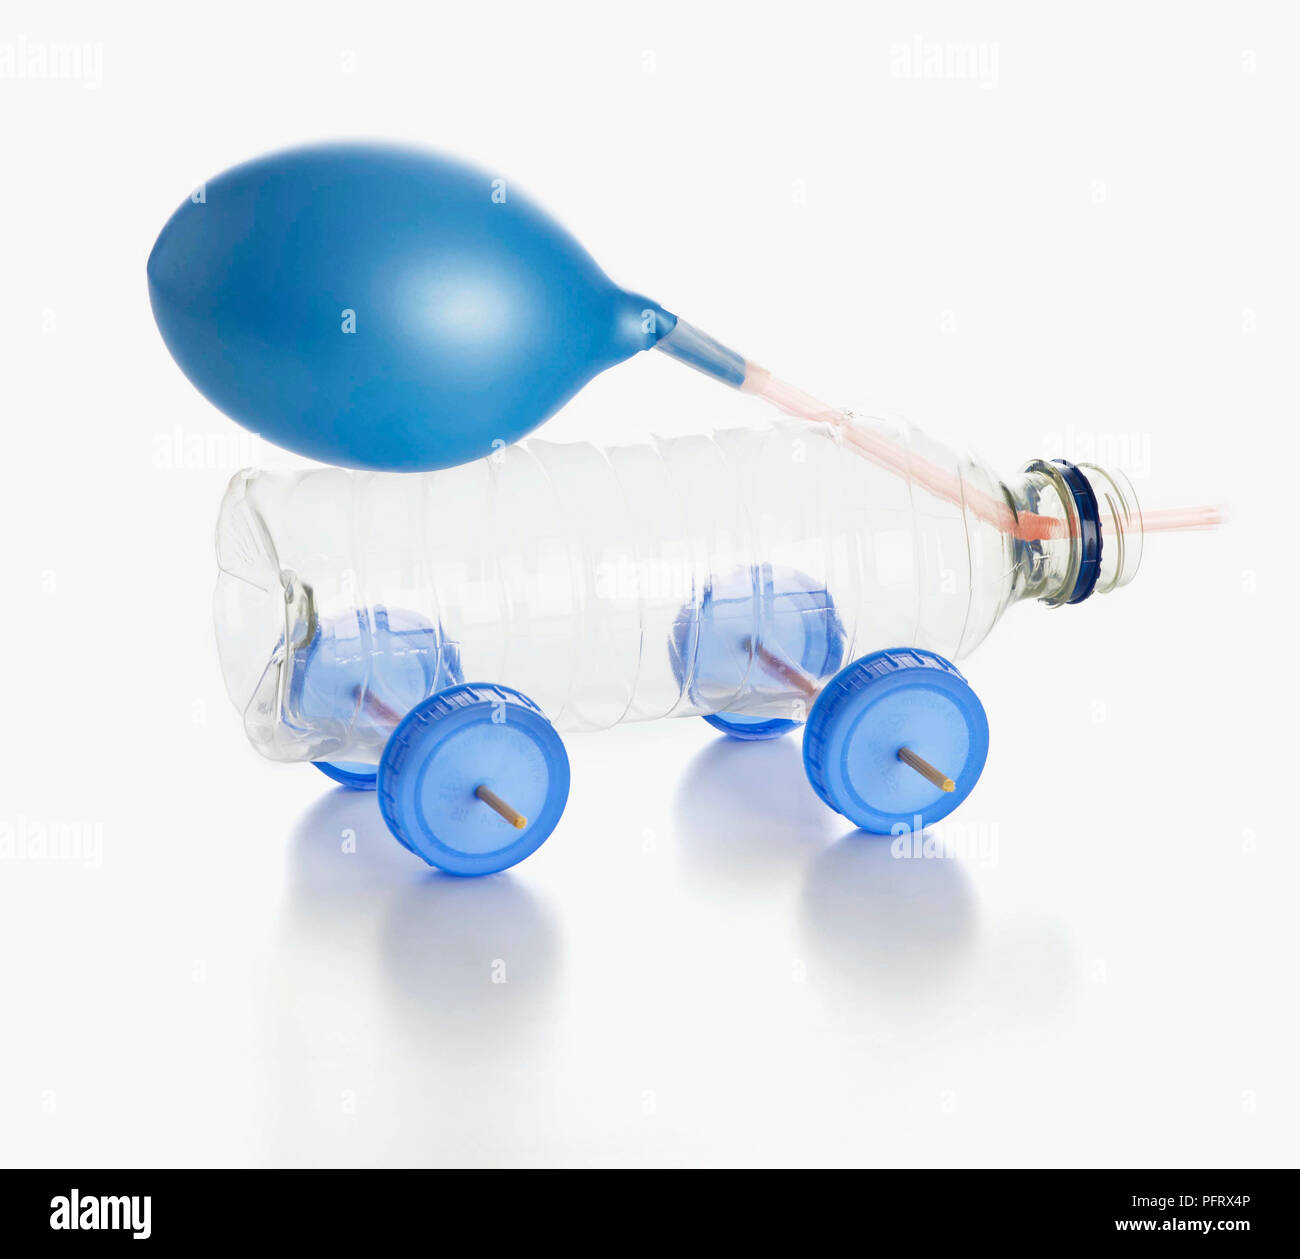 balloon-powered-bottle-car-PFRX4P